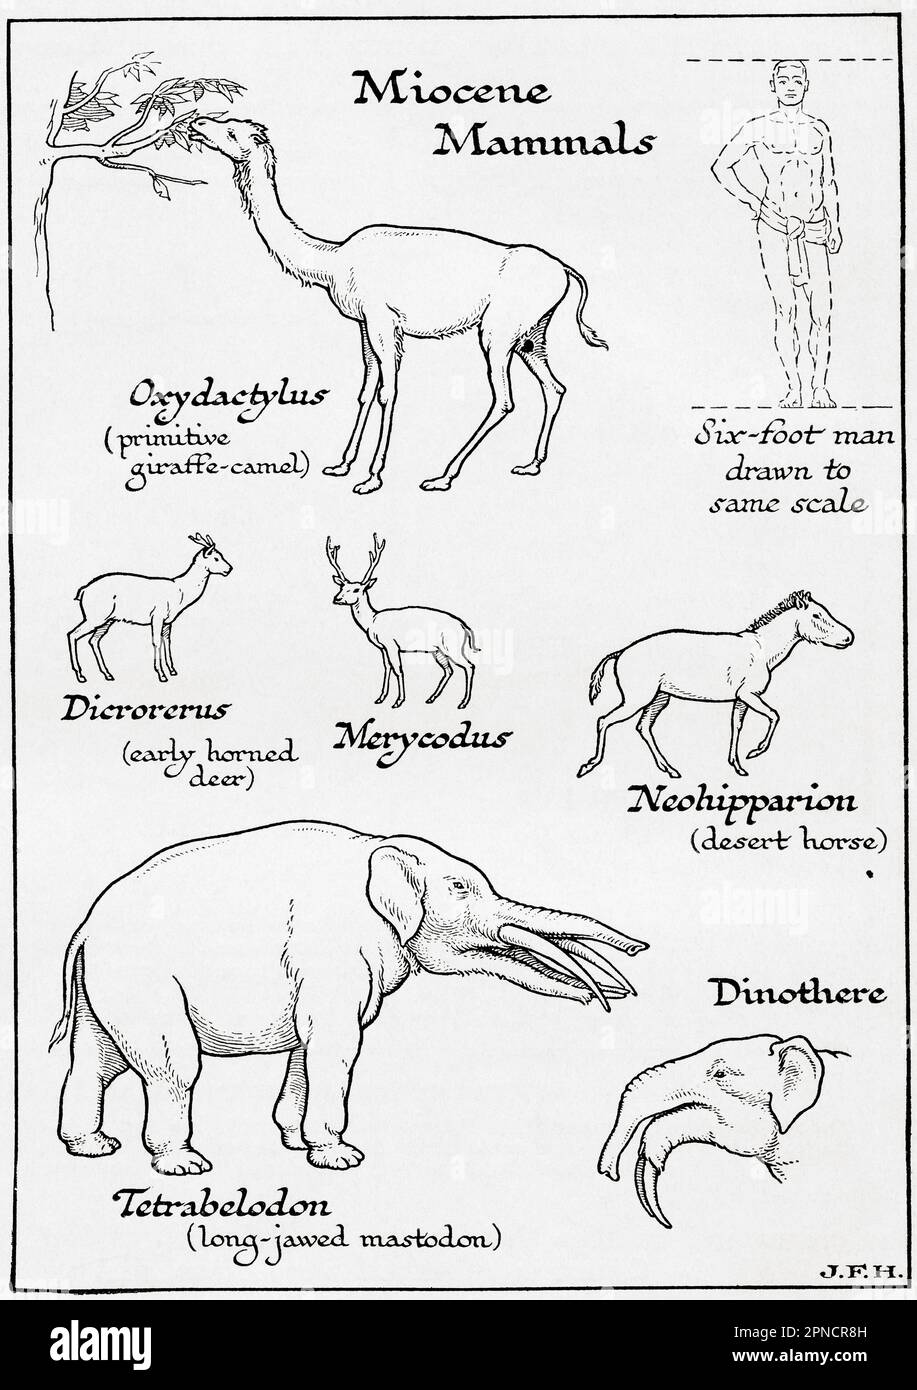 Diagramme des mammifères Miocène, y compris Oxcydactylus, Dicrorerus, Merycodus, Neohipparion, Tetrabelodon et DinoThere. Dans le schéma, un homme de six pieds dessiné à la même échelle que les autres figures. Extrait du livre Outline of History de H.G. Puits, publié en 1920. Banque D'Images